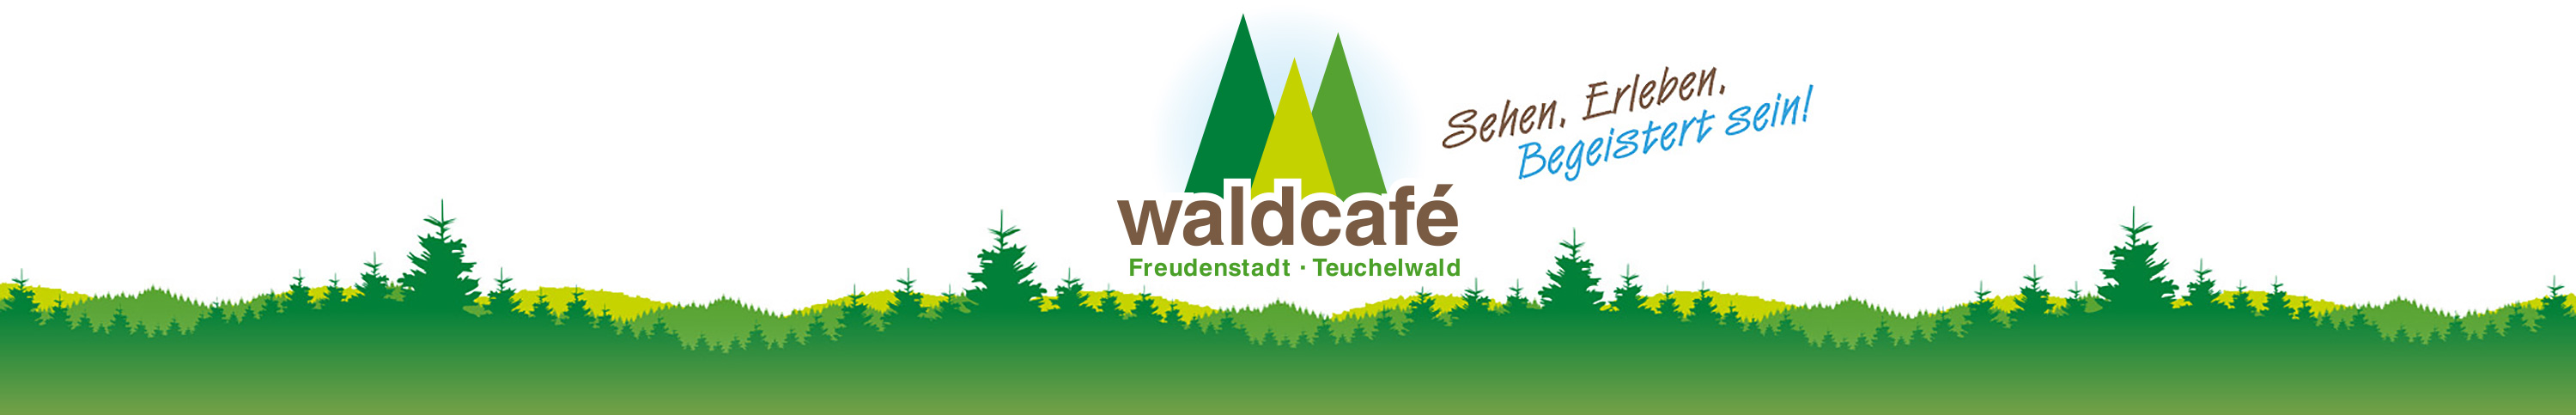 waldcafe header new